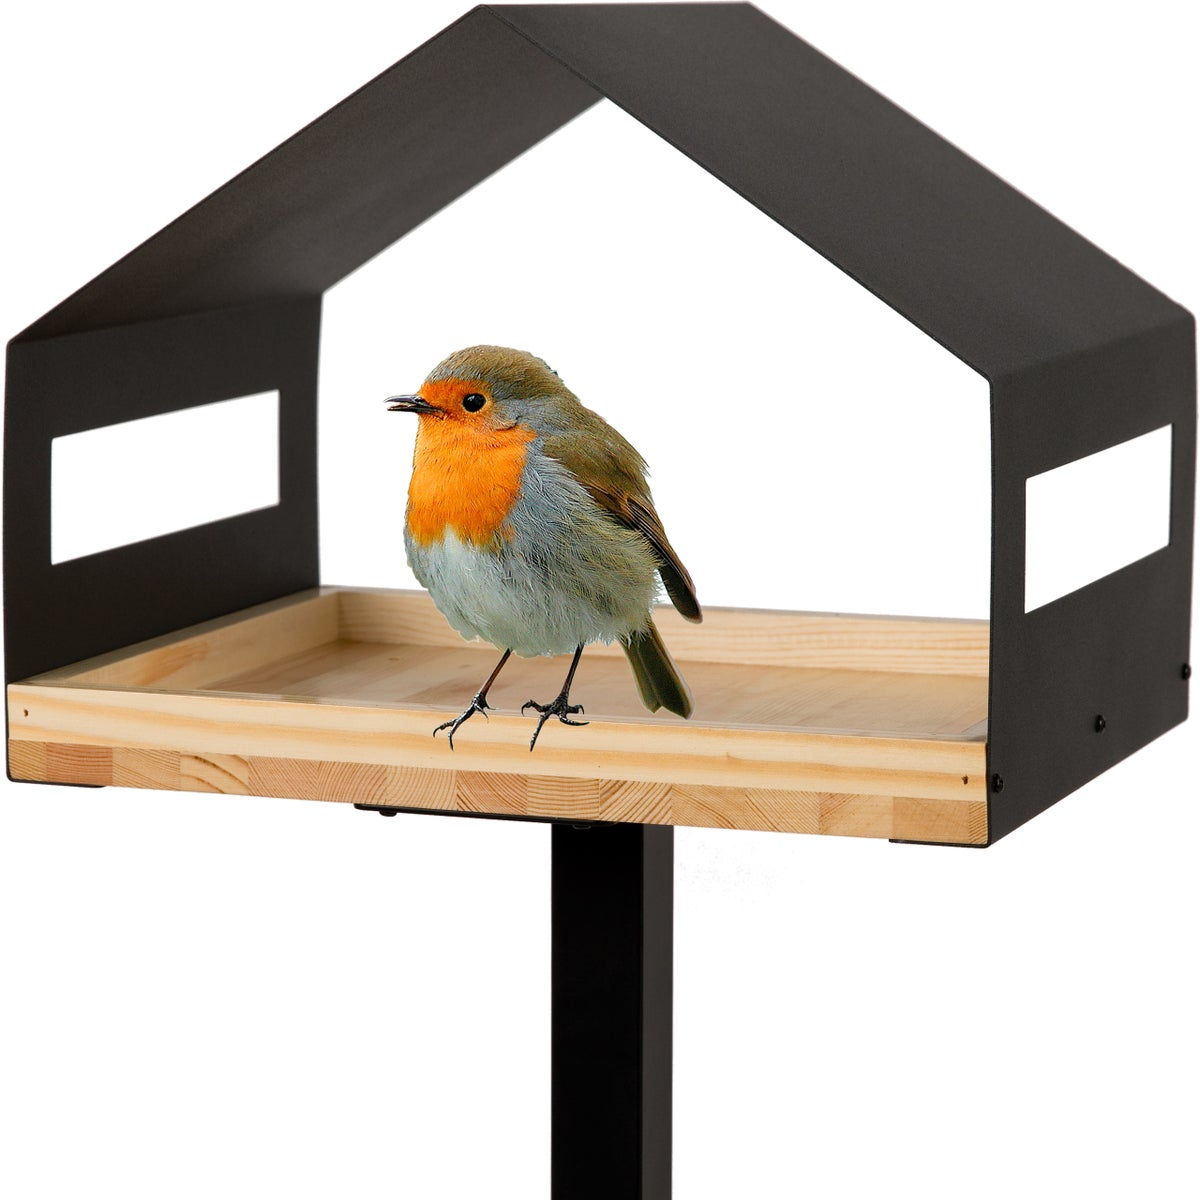 WONDERMAKE - Design Vogelhaus mit Ständer aus Metall und Holz wetterfest, modernes Vogelfutterhaus groß Metalldach stehend, Vogelhäuschen Futterhaus für Vögel zum Stellen XL